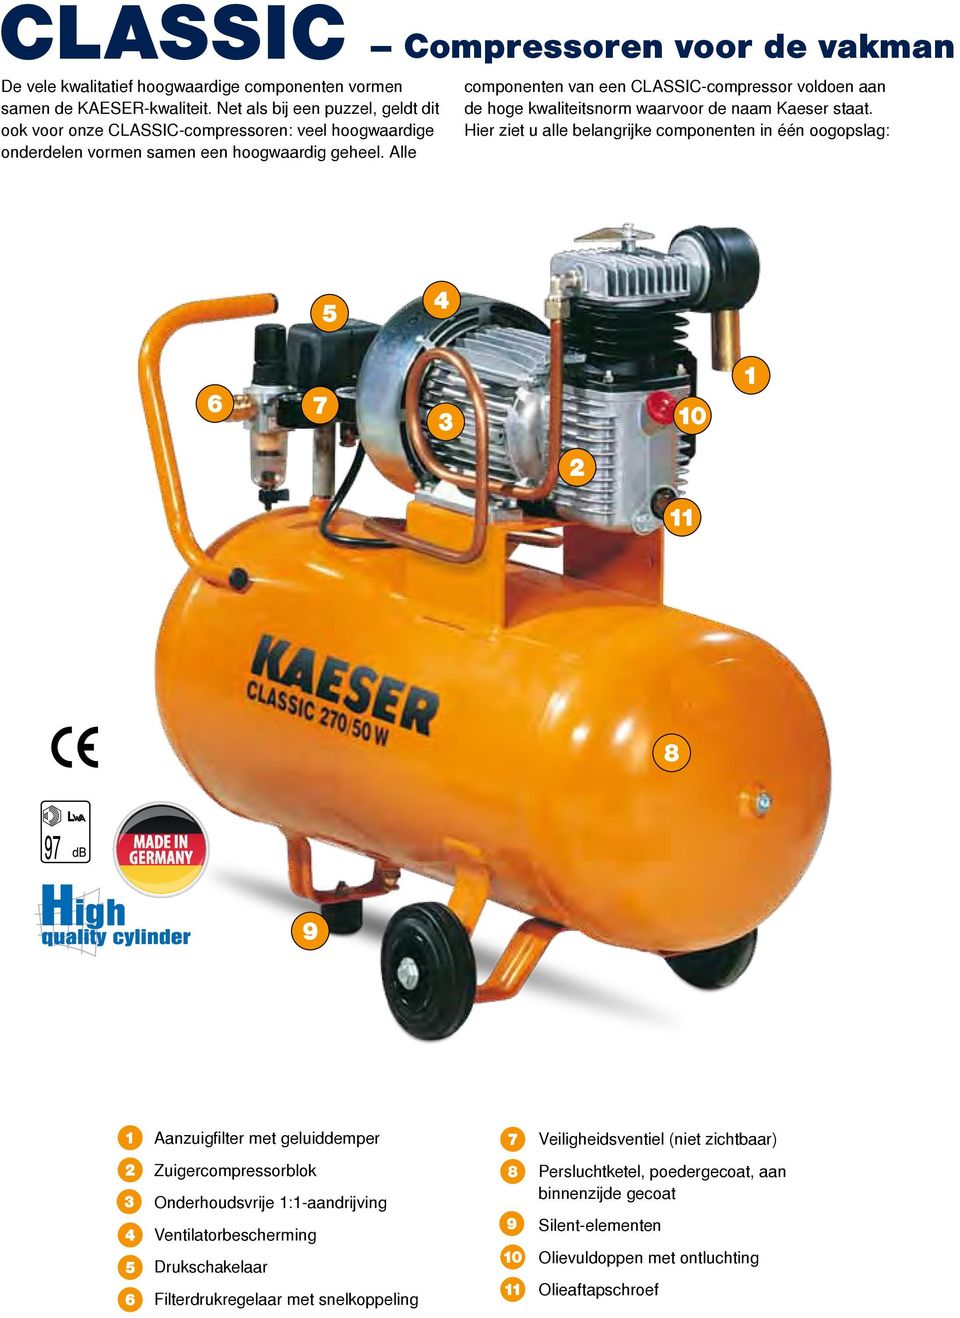 Alle componenten van een CLASSIC-compressor voldoen aan de hoge kwaliteitsnorm waarvoor de naam Kaeser staat.